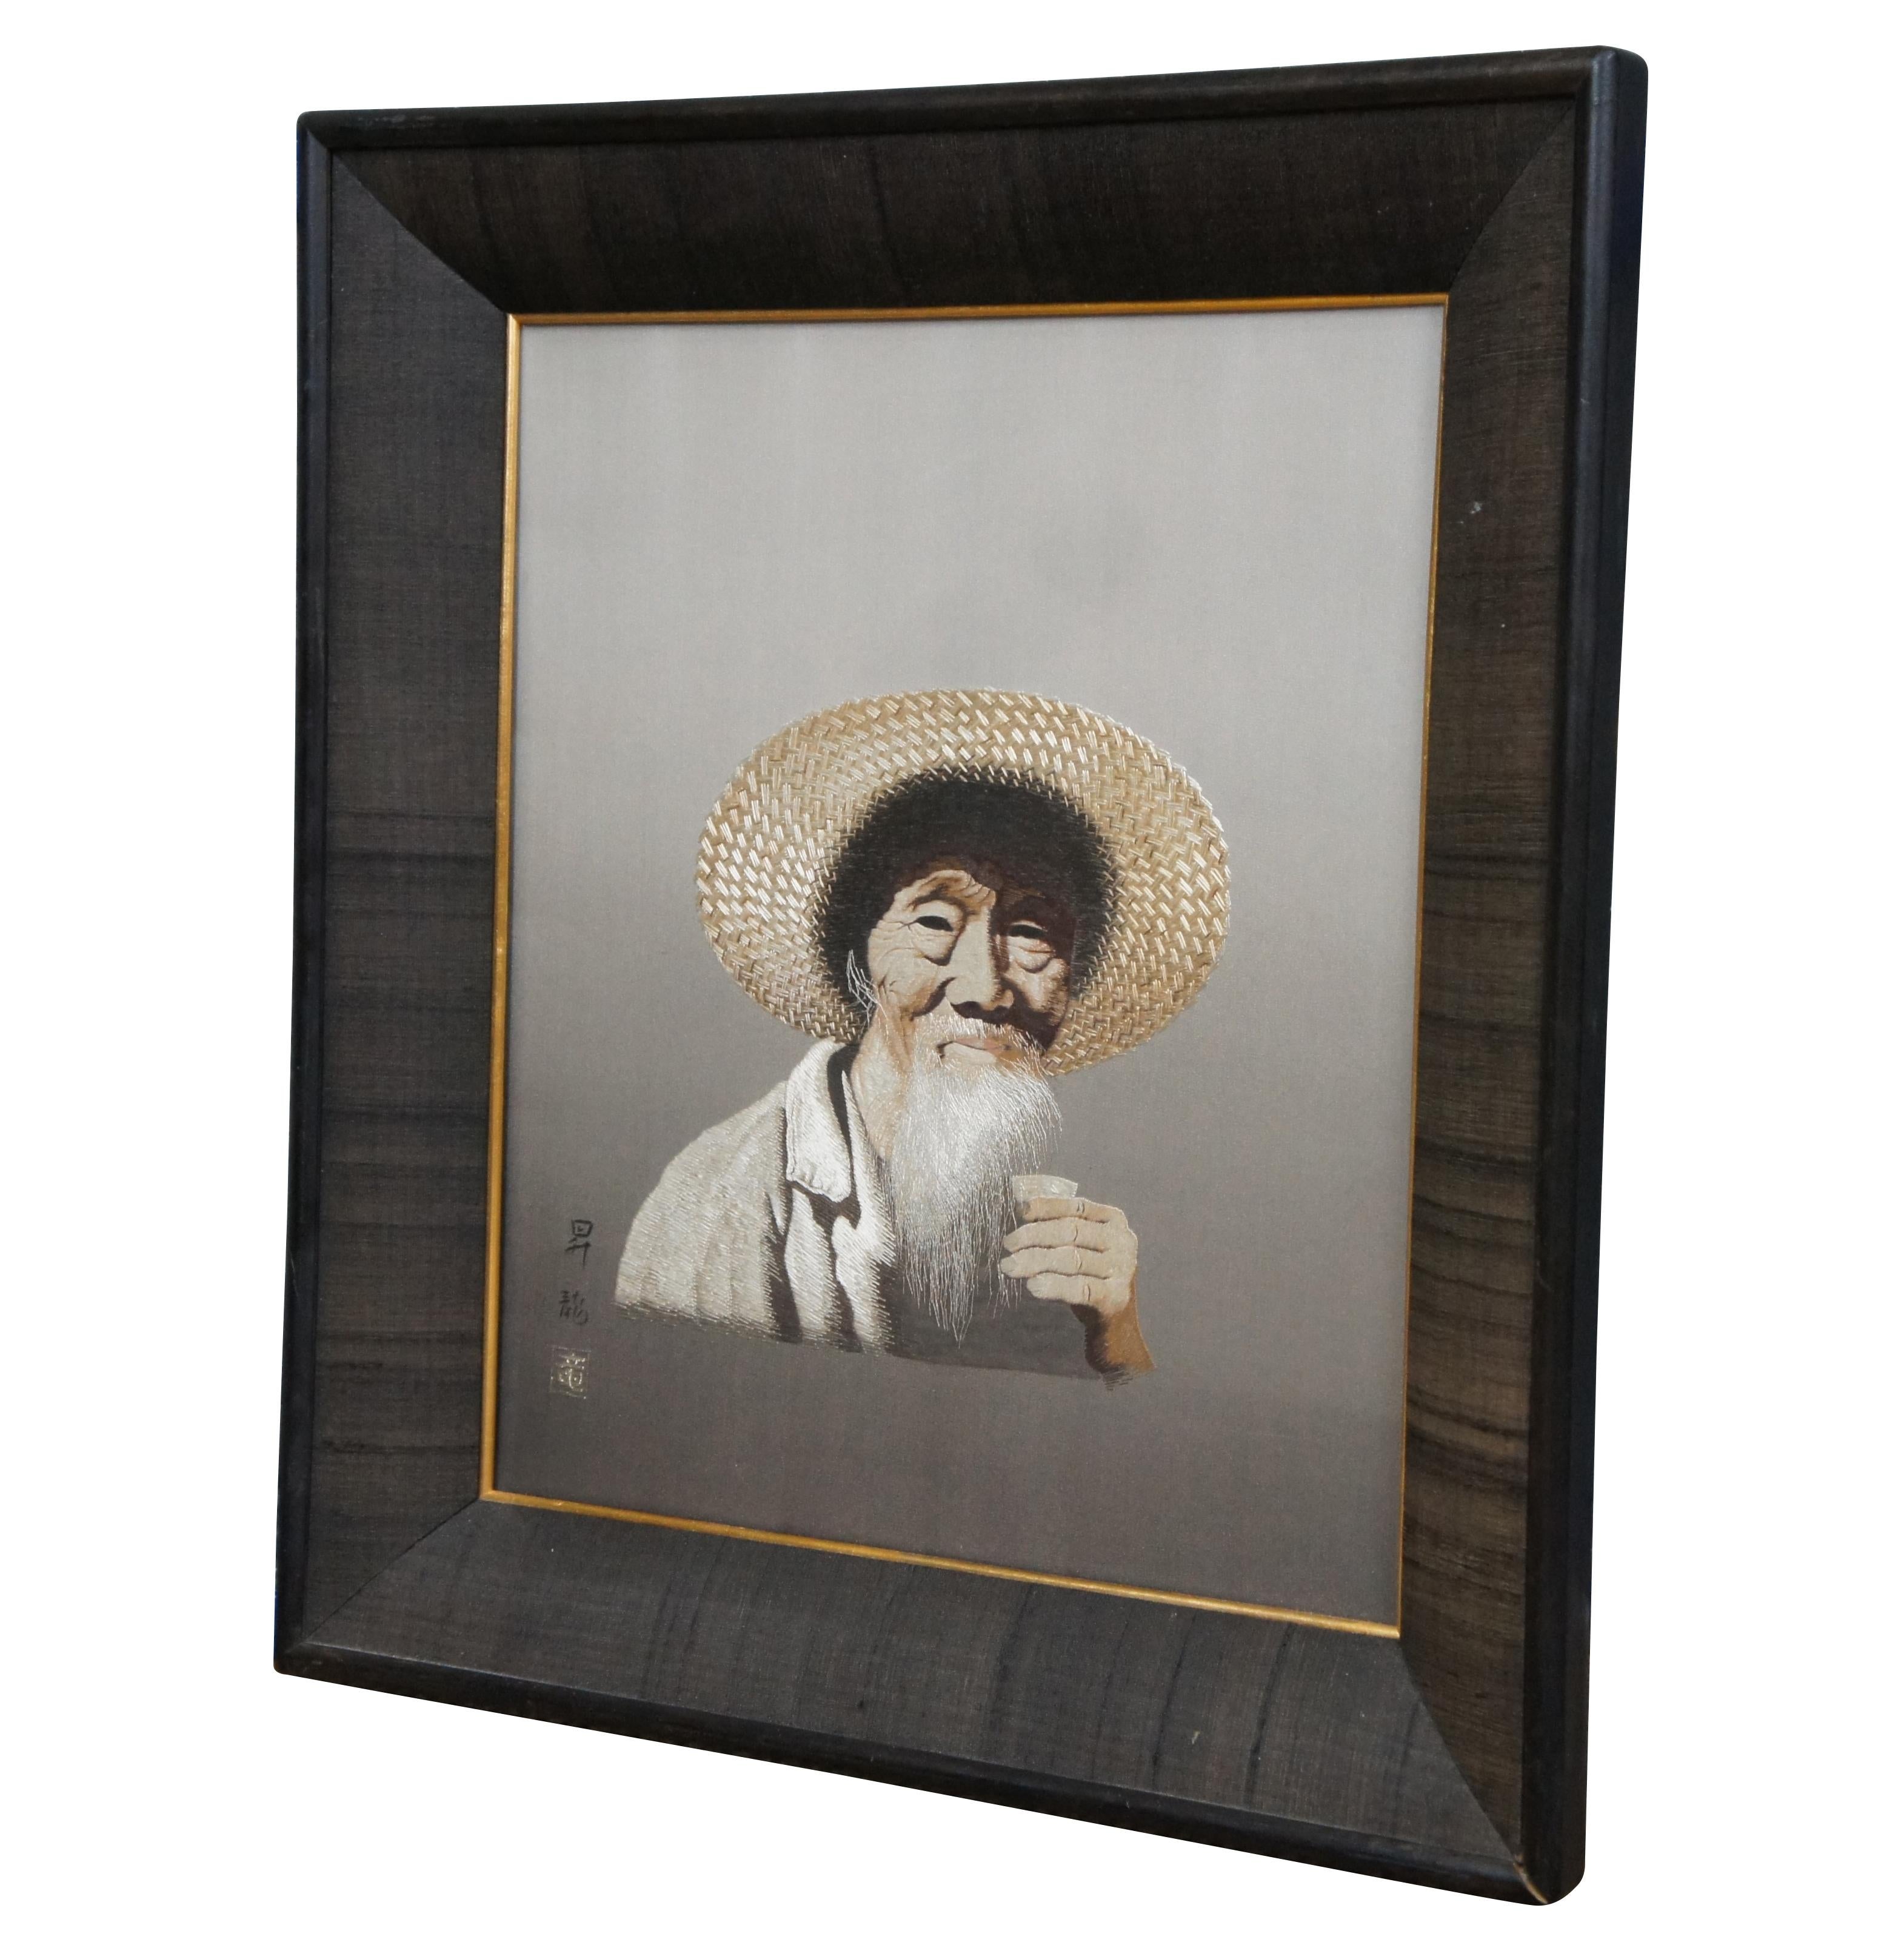 Erstaunlich realistisches japanisches Chinoiserie-Porträt eines alten Mannes mit Hut, der eine Sake-Tasse hebt, gestickt mit Uchida-Seide aus der Mitte des Jahrhunderts.  Signiert unten rechts.  Übersetzung:  昇龍 ist der Name und bedeutet 